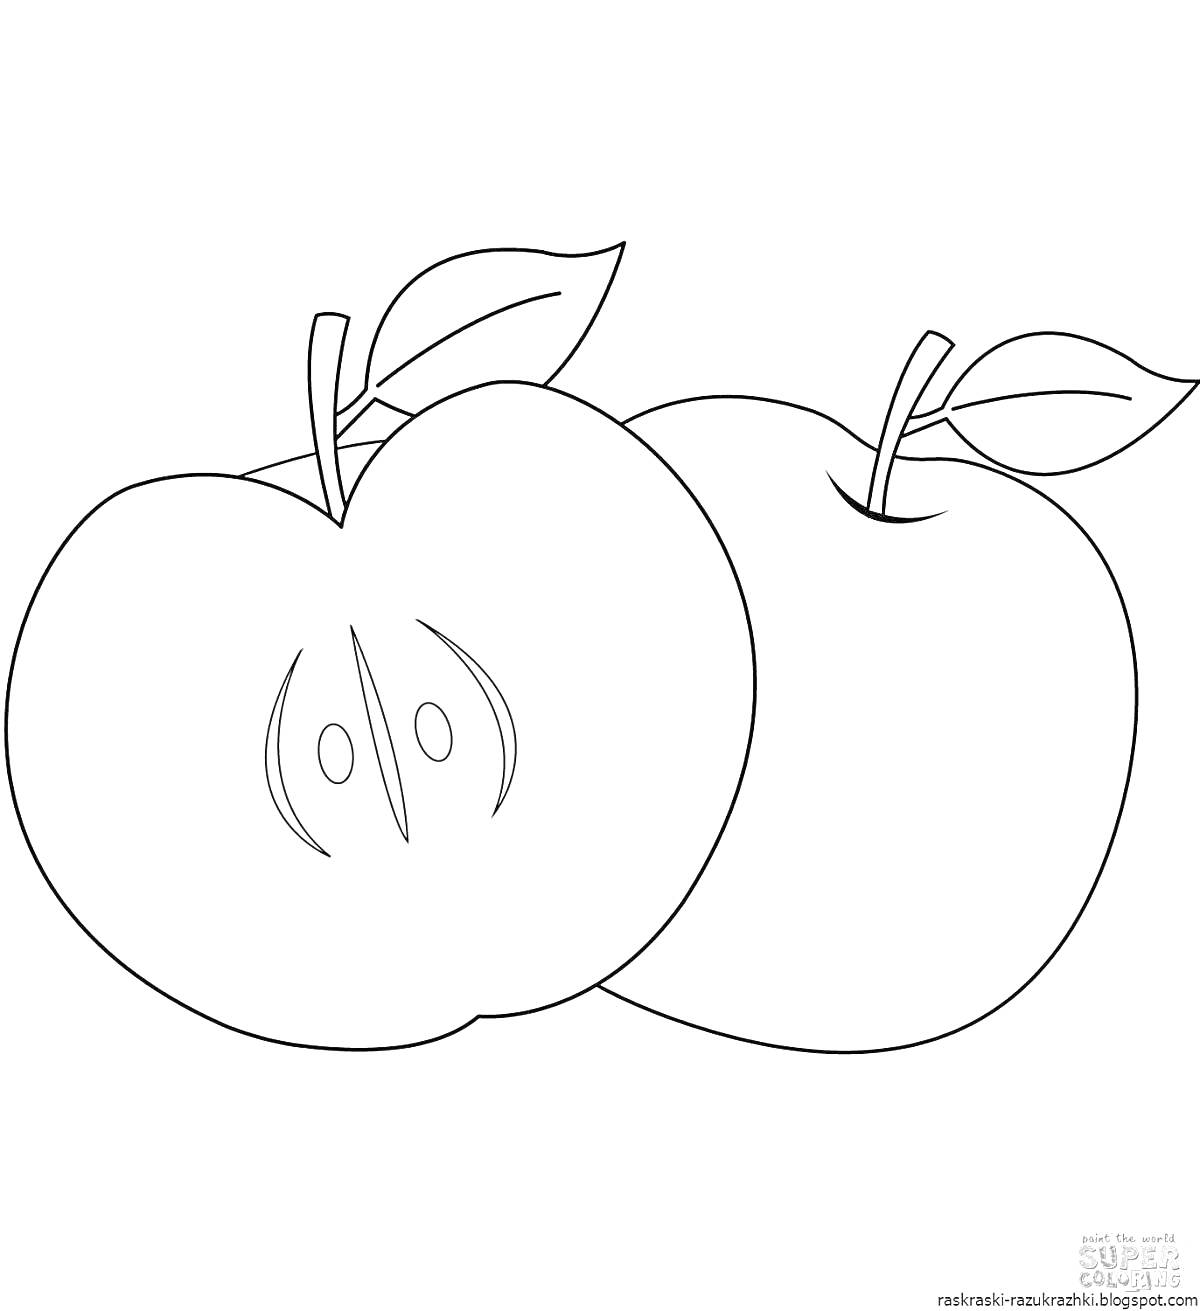 На раскраске изображено: Яблоко, Листья, Разрезанное яблоко, Целое яблоко